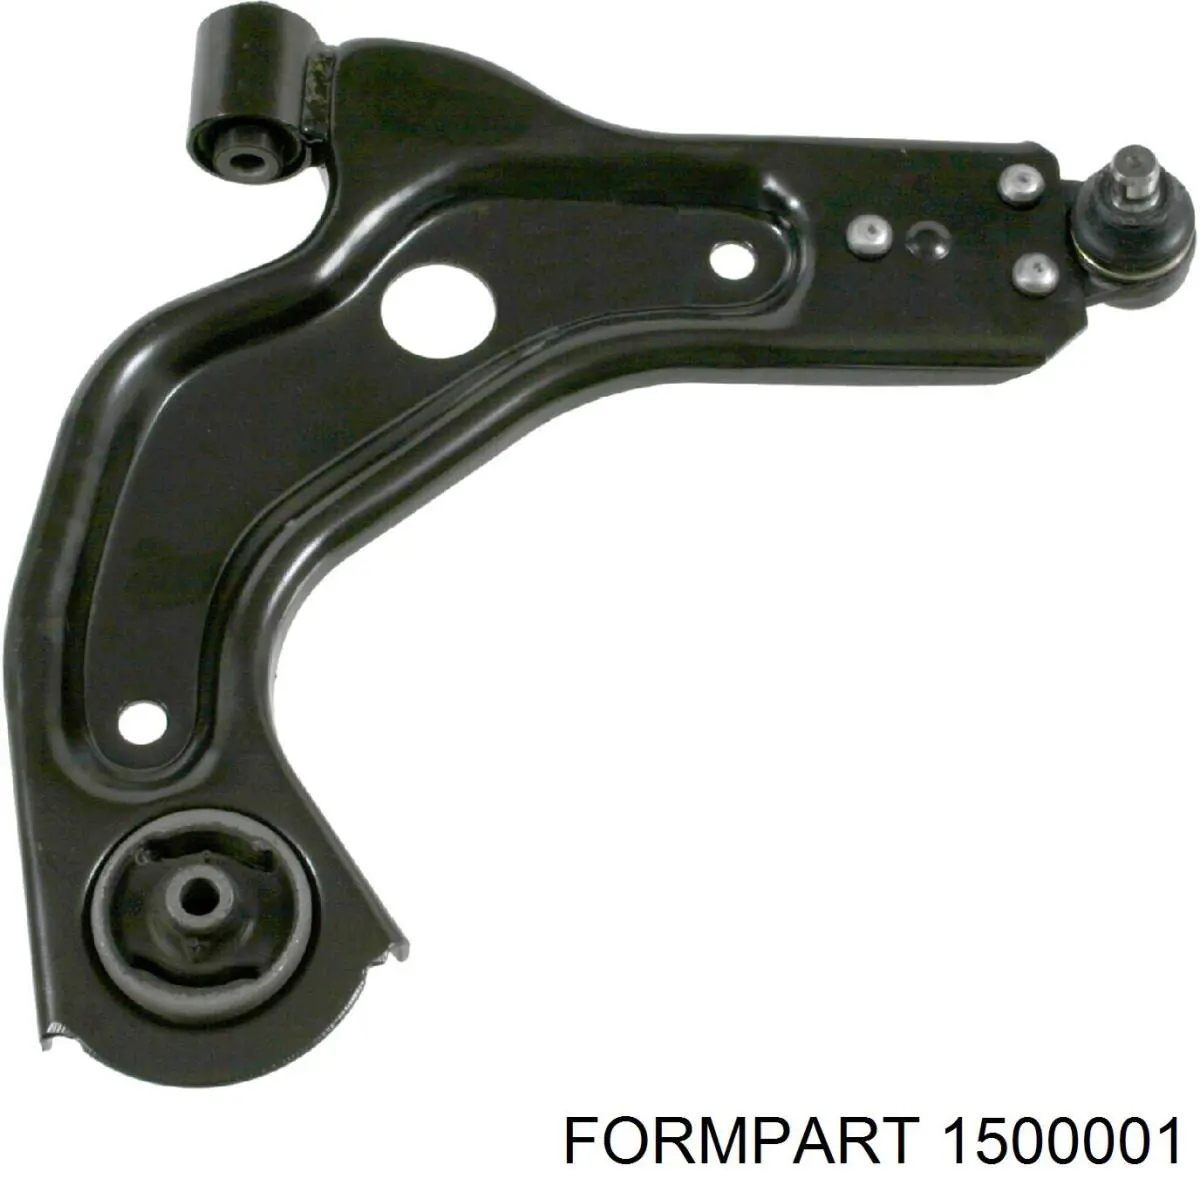 1500001 Formpart/Otoform silentblock de suspensión delantero inferior